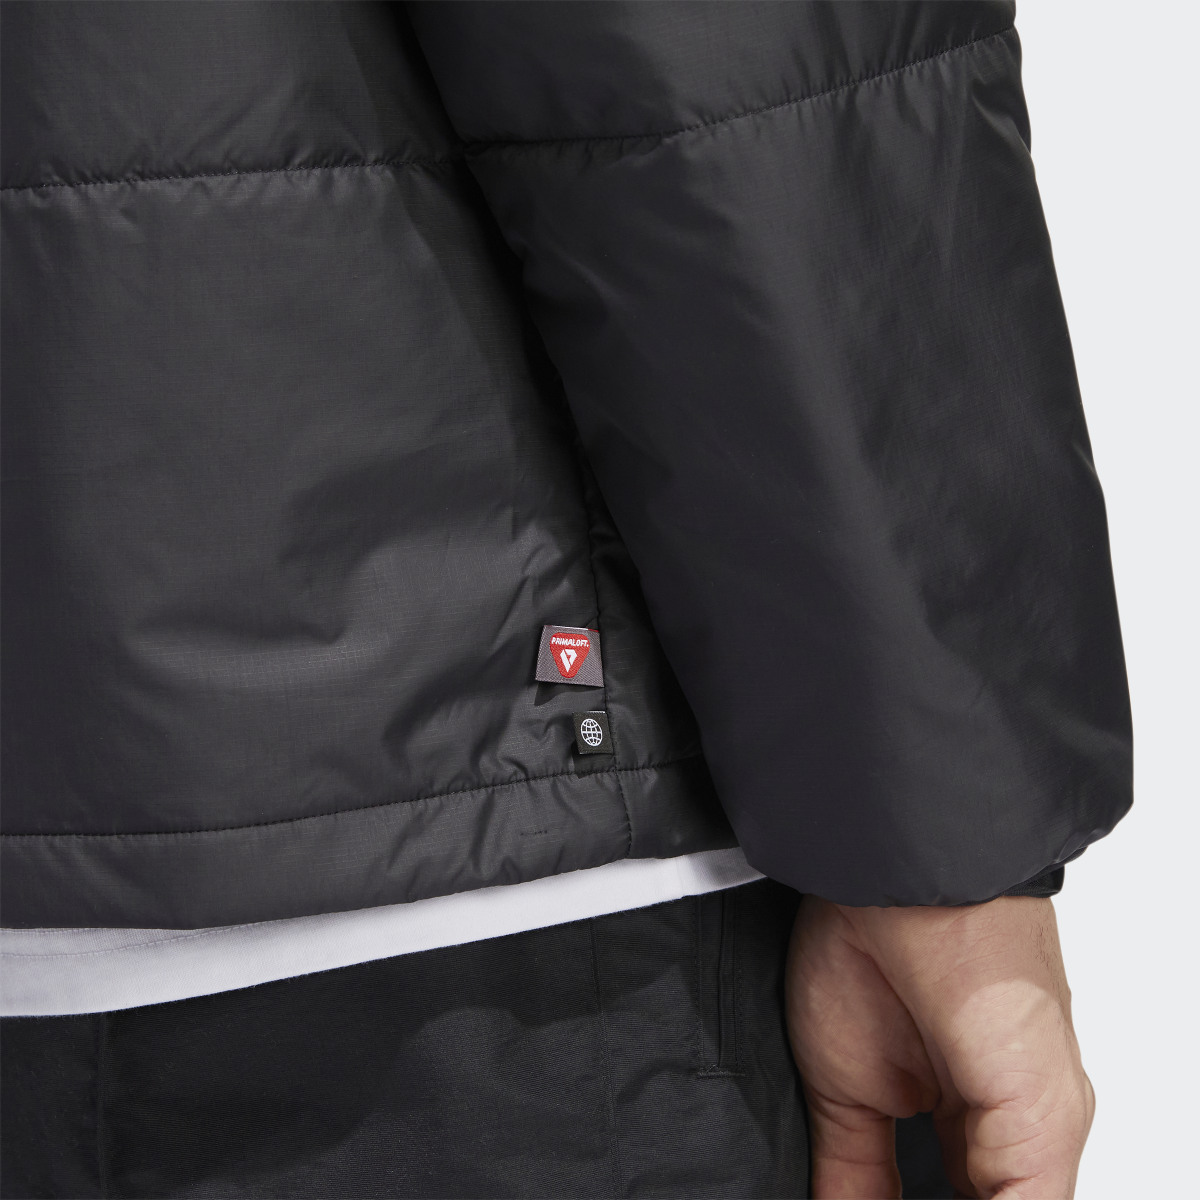 Adidas PrimaLoft Outer Station Jacket (uniseks). 8